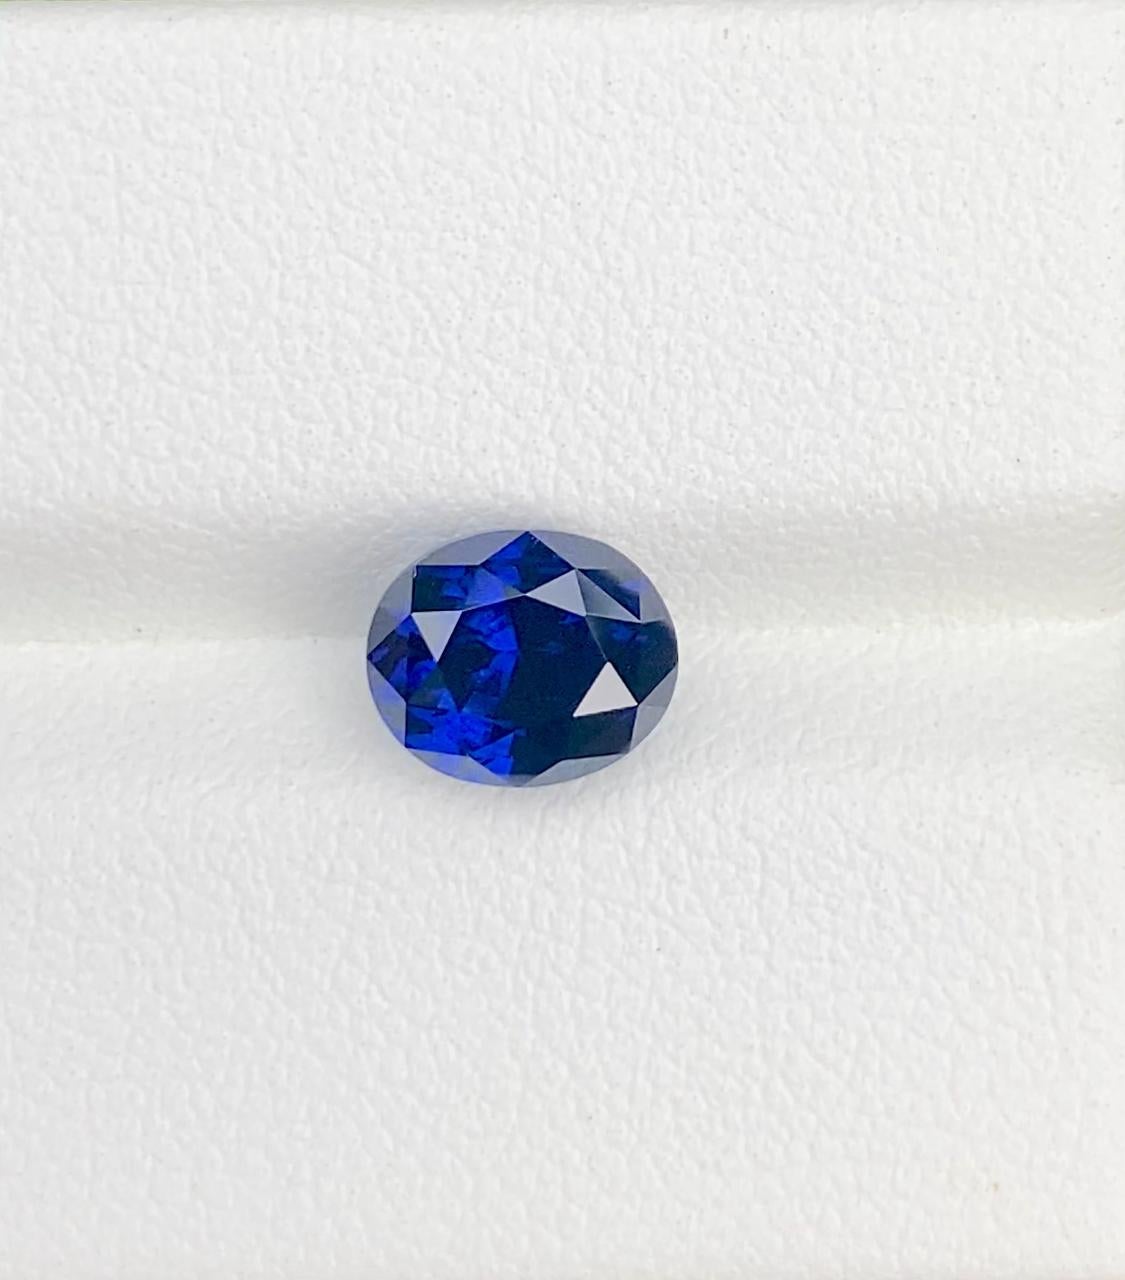 Voici le magnifique saphir royal bleu de Ceylan, sans défaut interne, pesant 2,70 carats. Cette pierre précieuse exquise arbore une couleur bleu royal captivante qui respire l'élégance et la sophistication. D'une clarté sans faille et d'une coupe